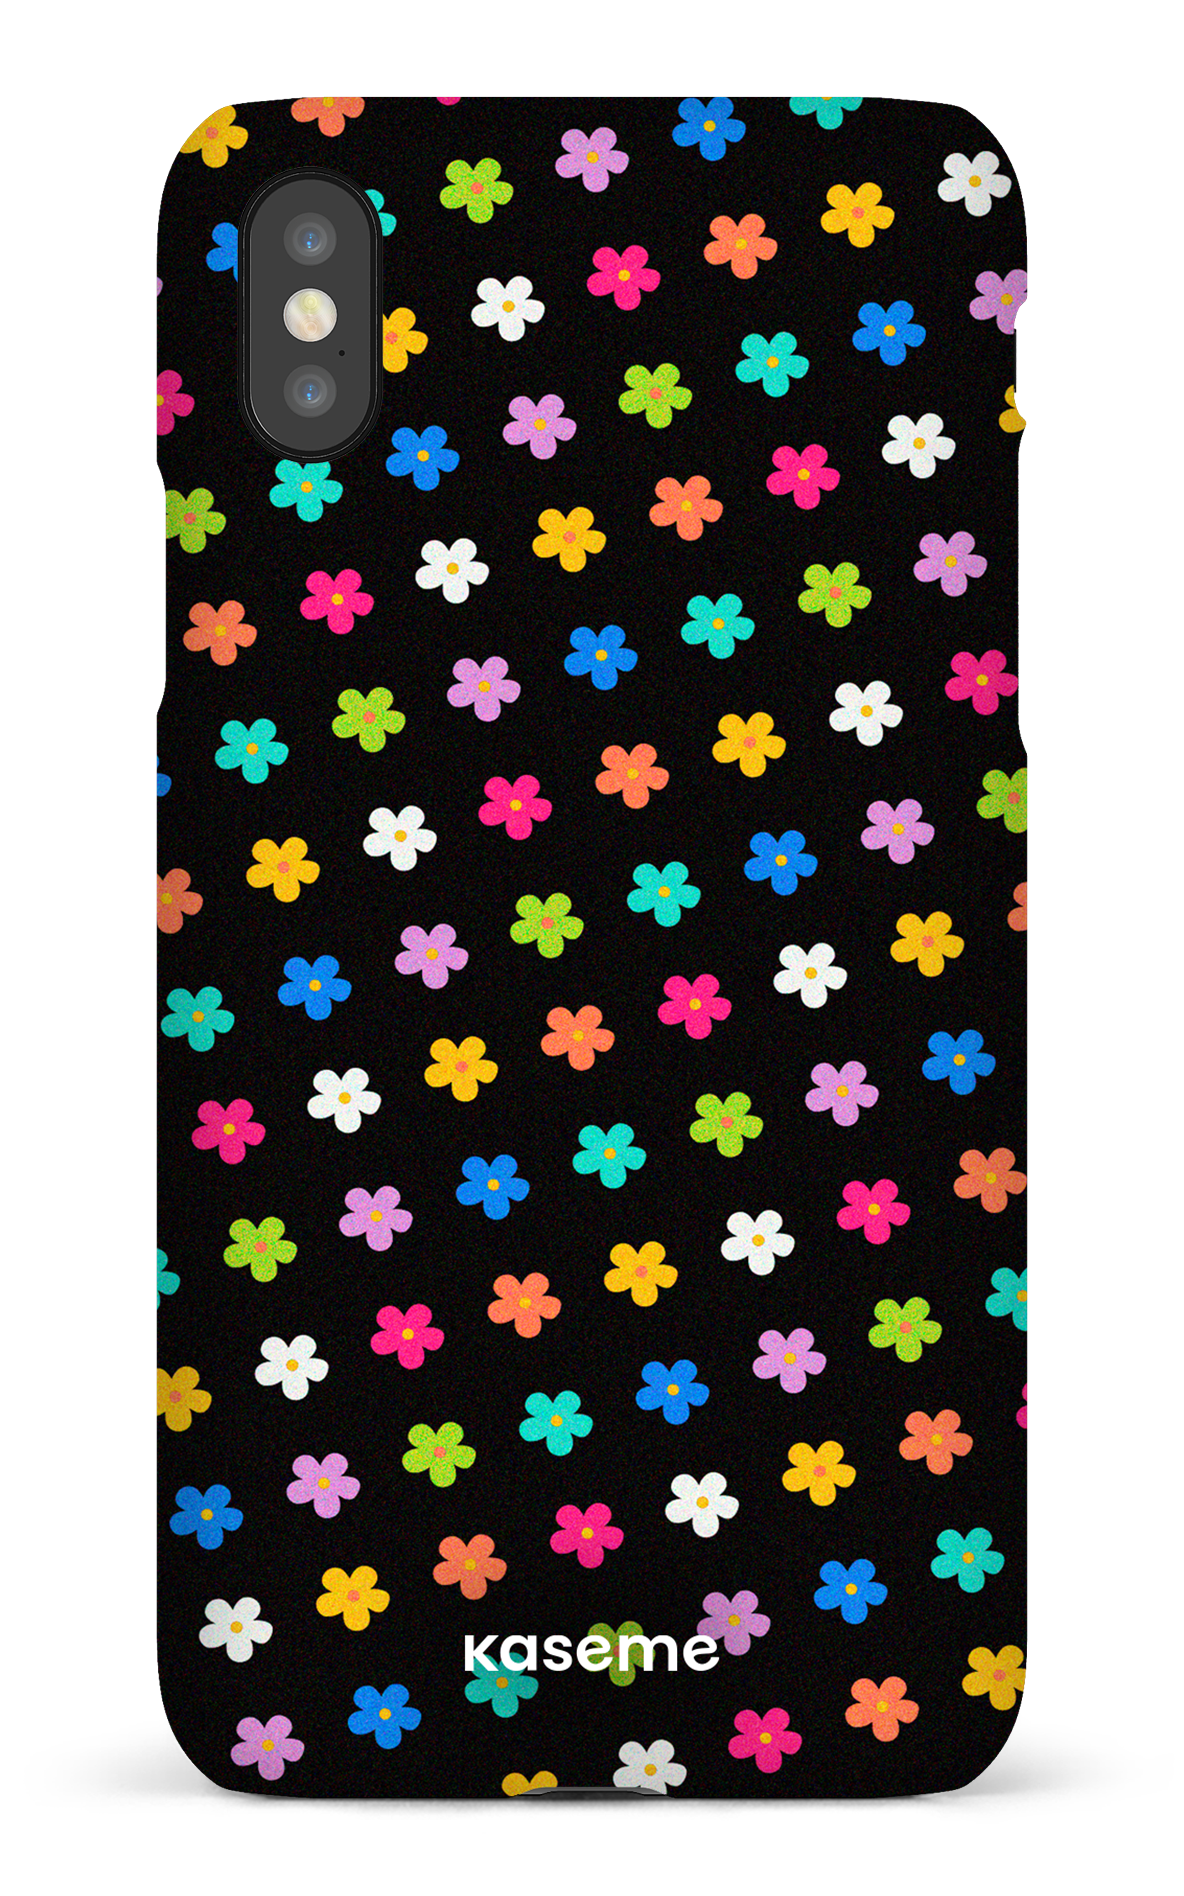 Joyful Flowers Black - iPhone X/Xs